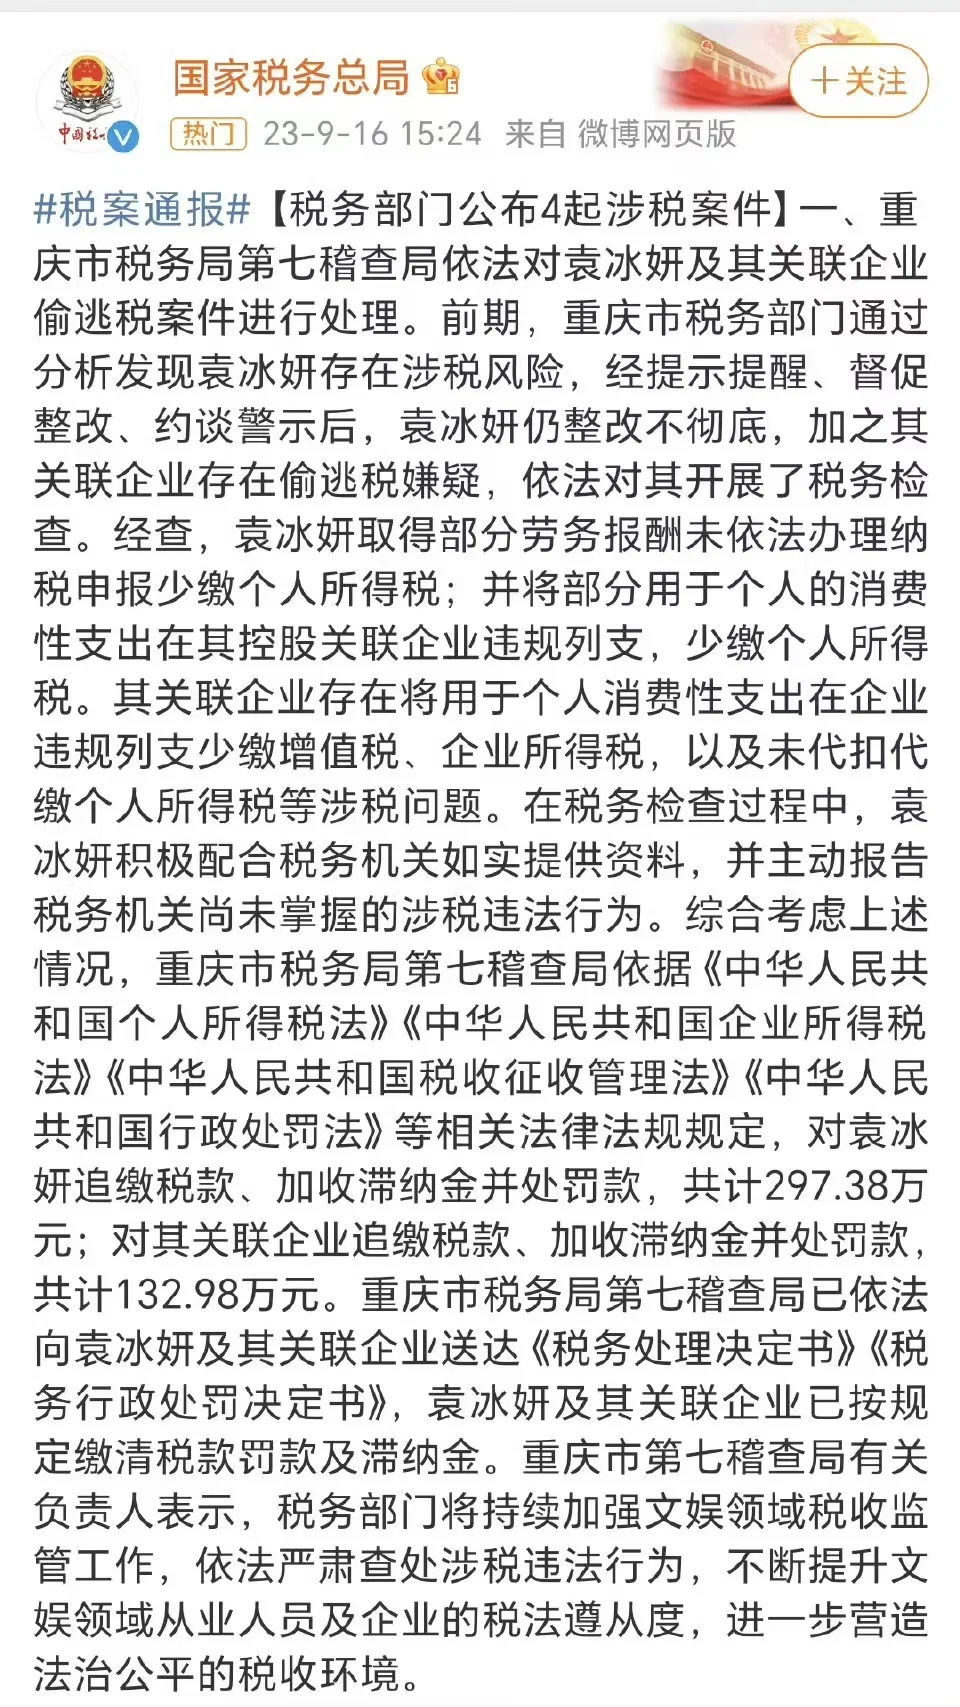 官方通报袁冰妍偷税漏税事件 称此前约谈后整改不彻底